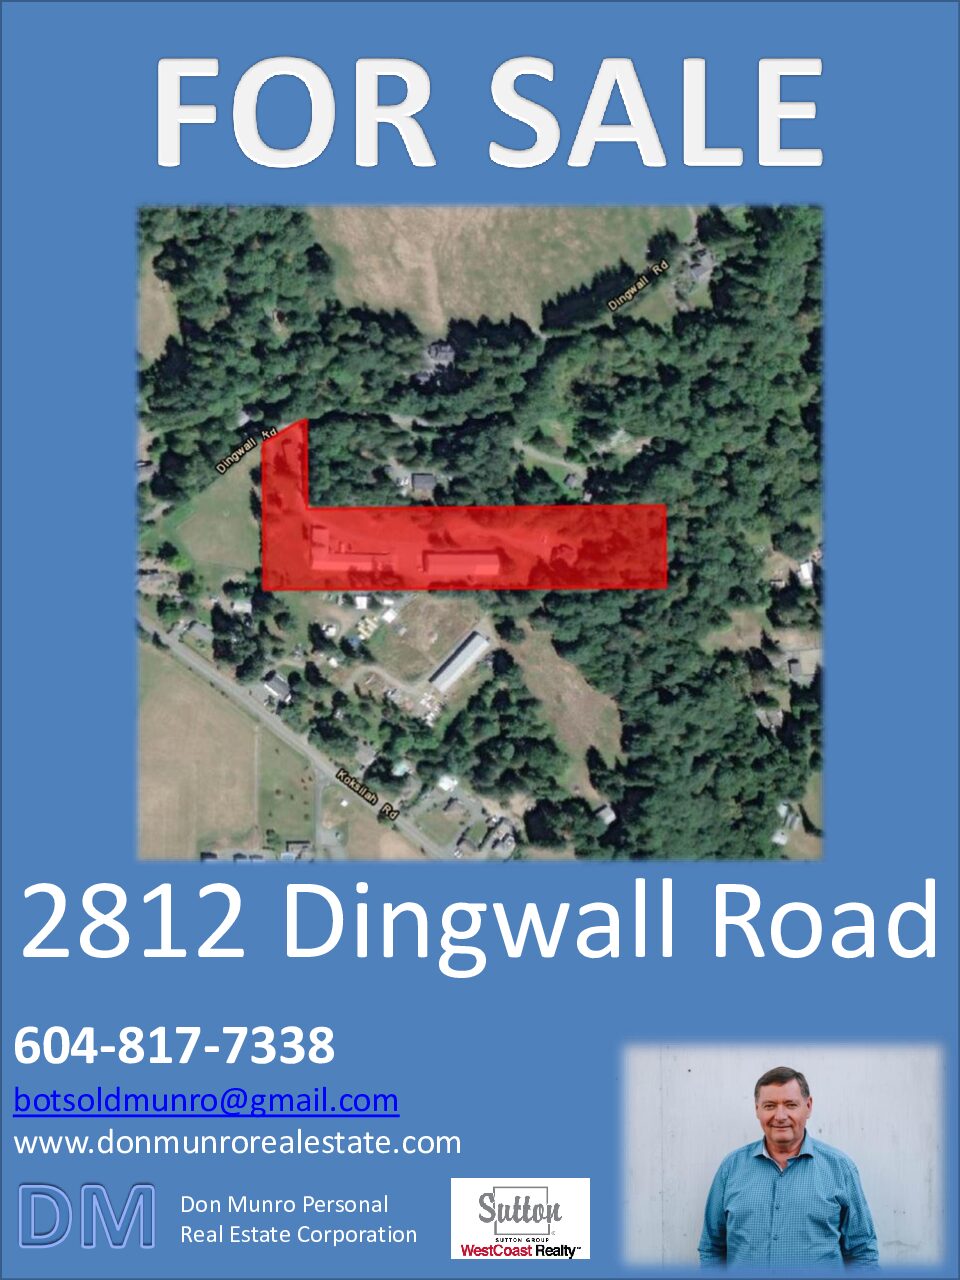 2812 Dingwall Road Sales Package